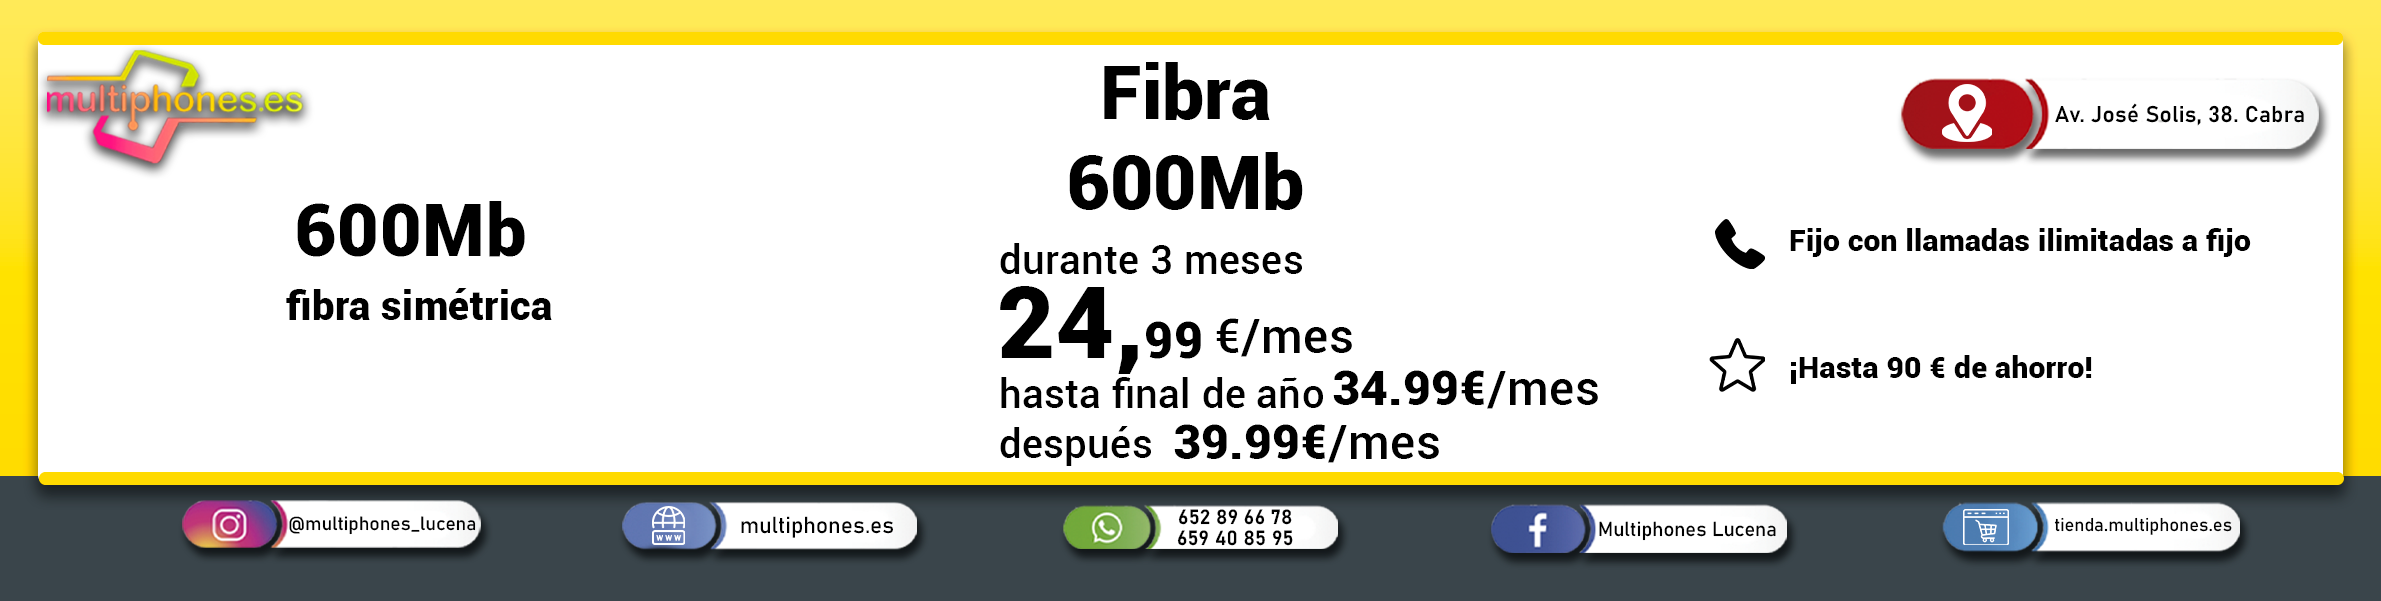 MASMOVIL – FIBRA 600Mb Y FIJO  con llamadas ilimitadas de fijo a fijo.